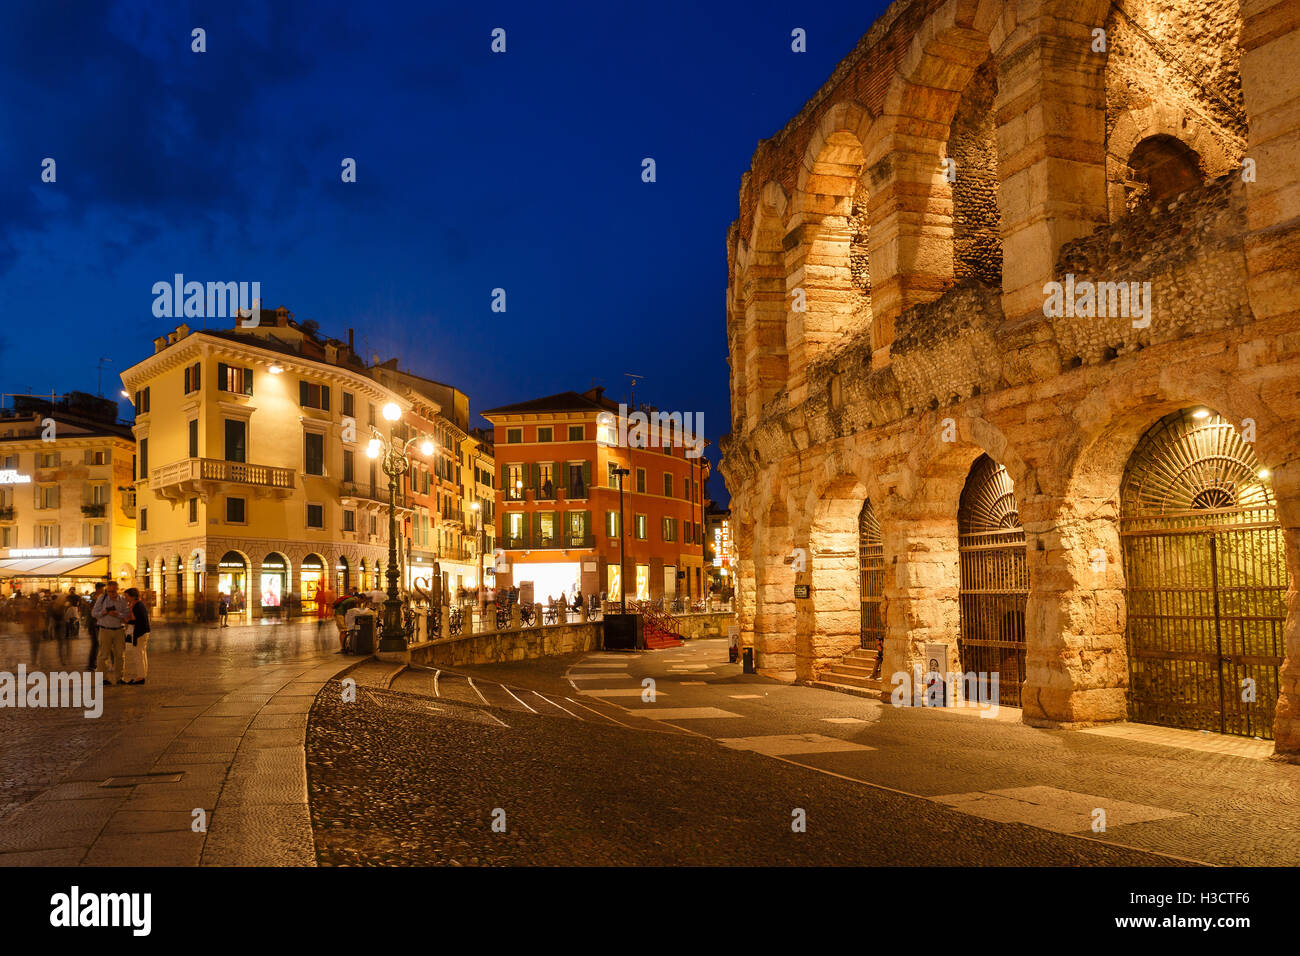 La piazza Bra nelle vicinanze dell'Arena di Verona nella città di Verona, Italia Foto Stock